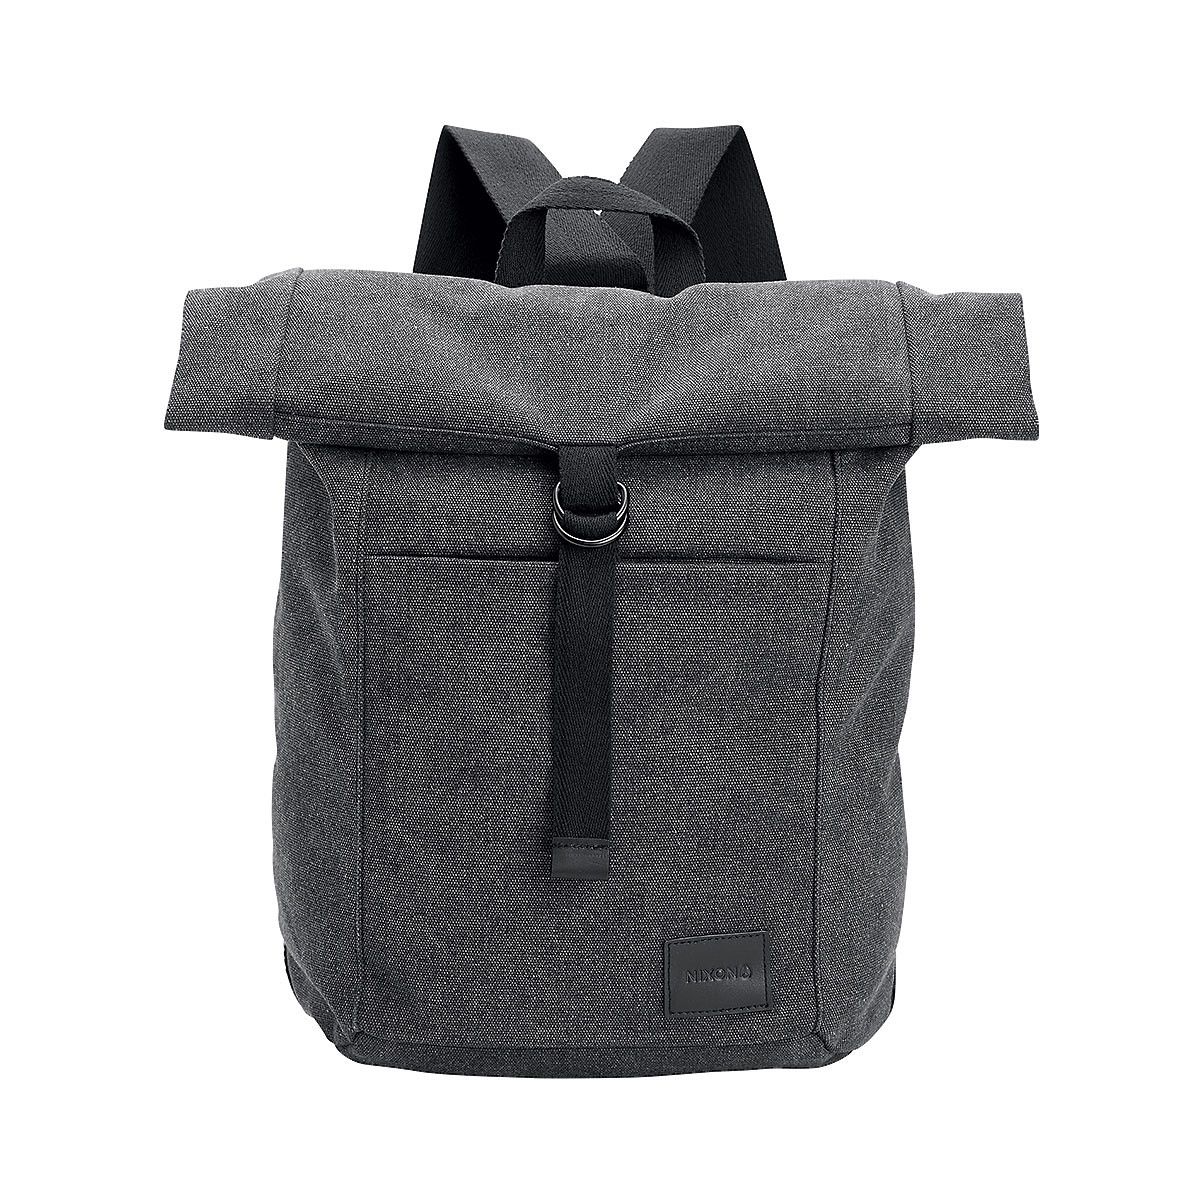 Nixon Hudson Toploader Backpack Black, One Size